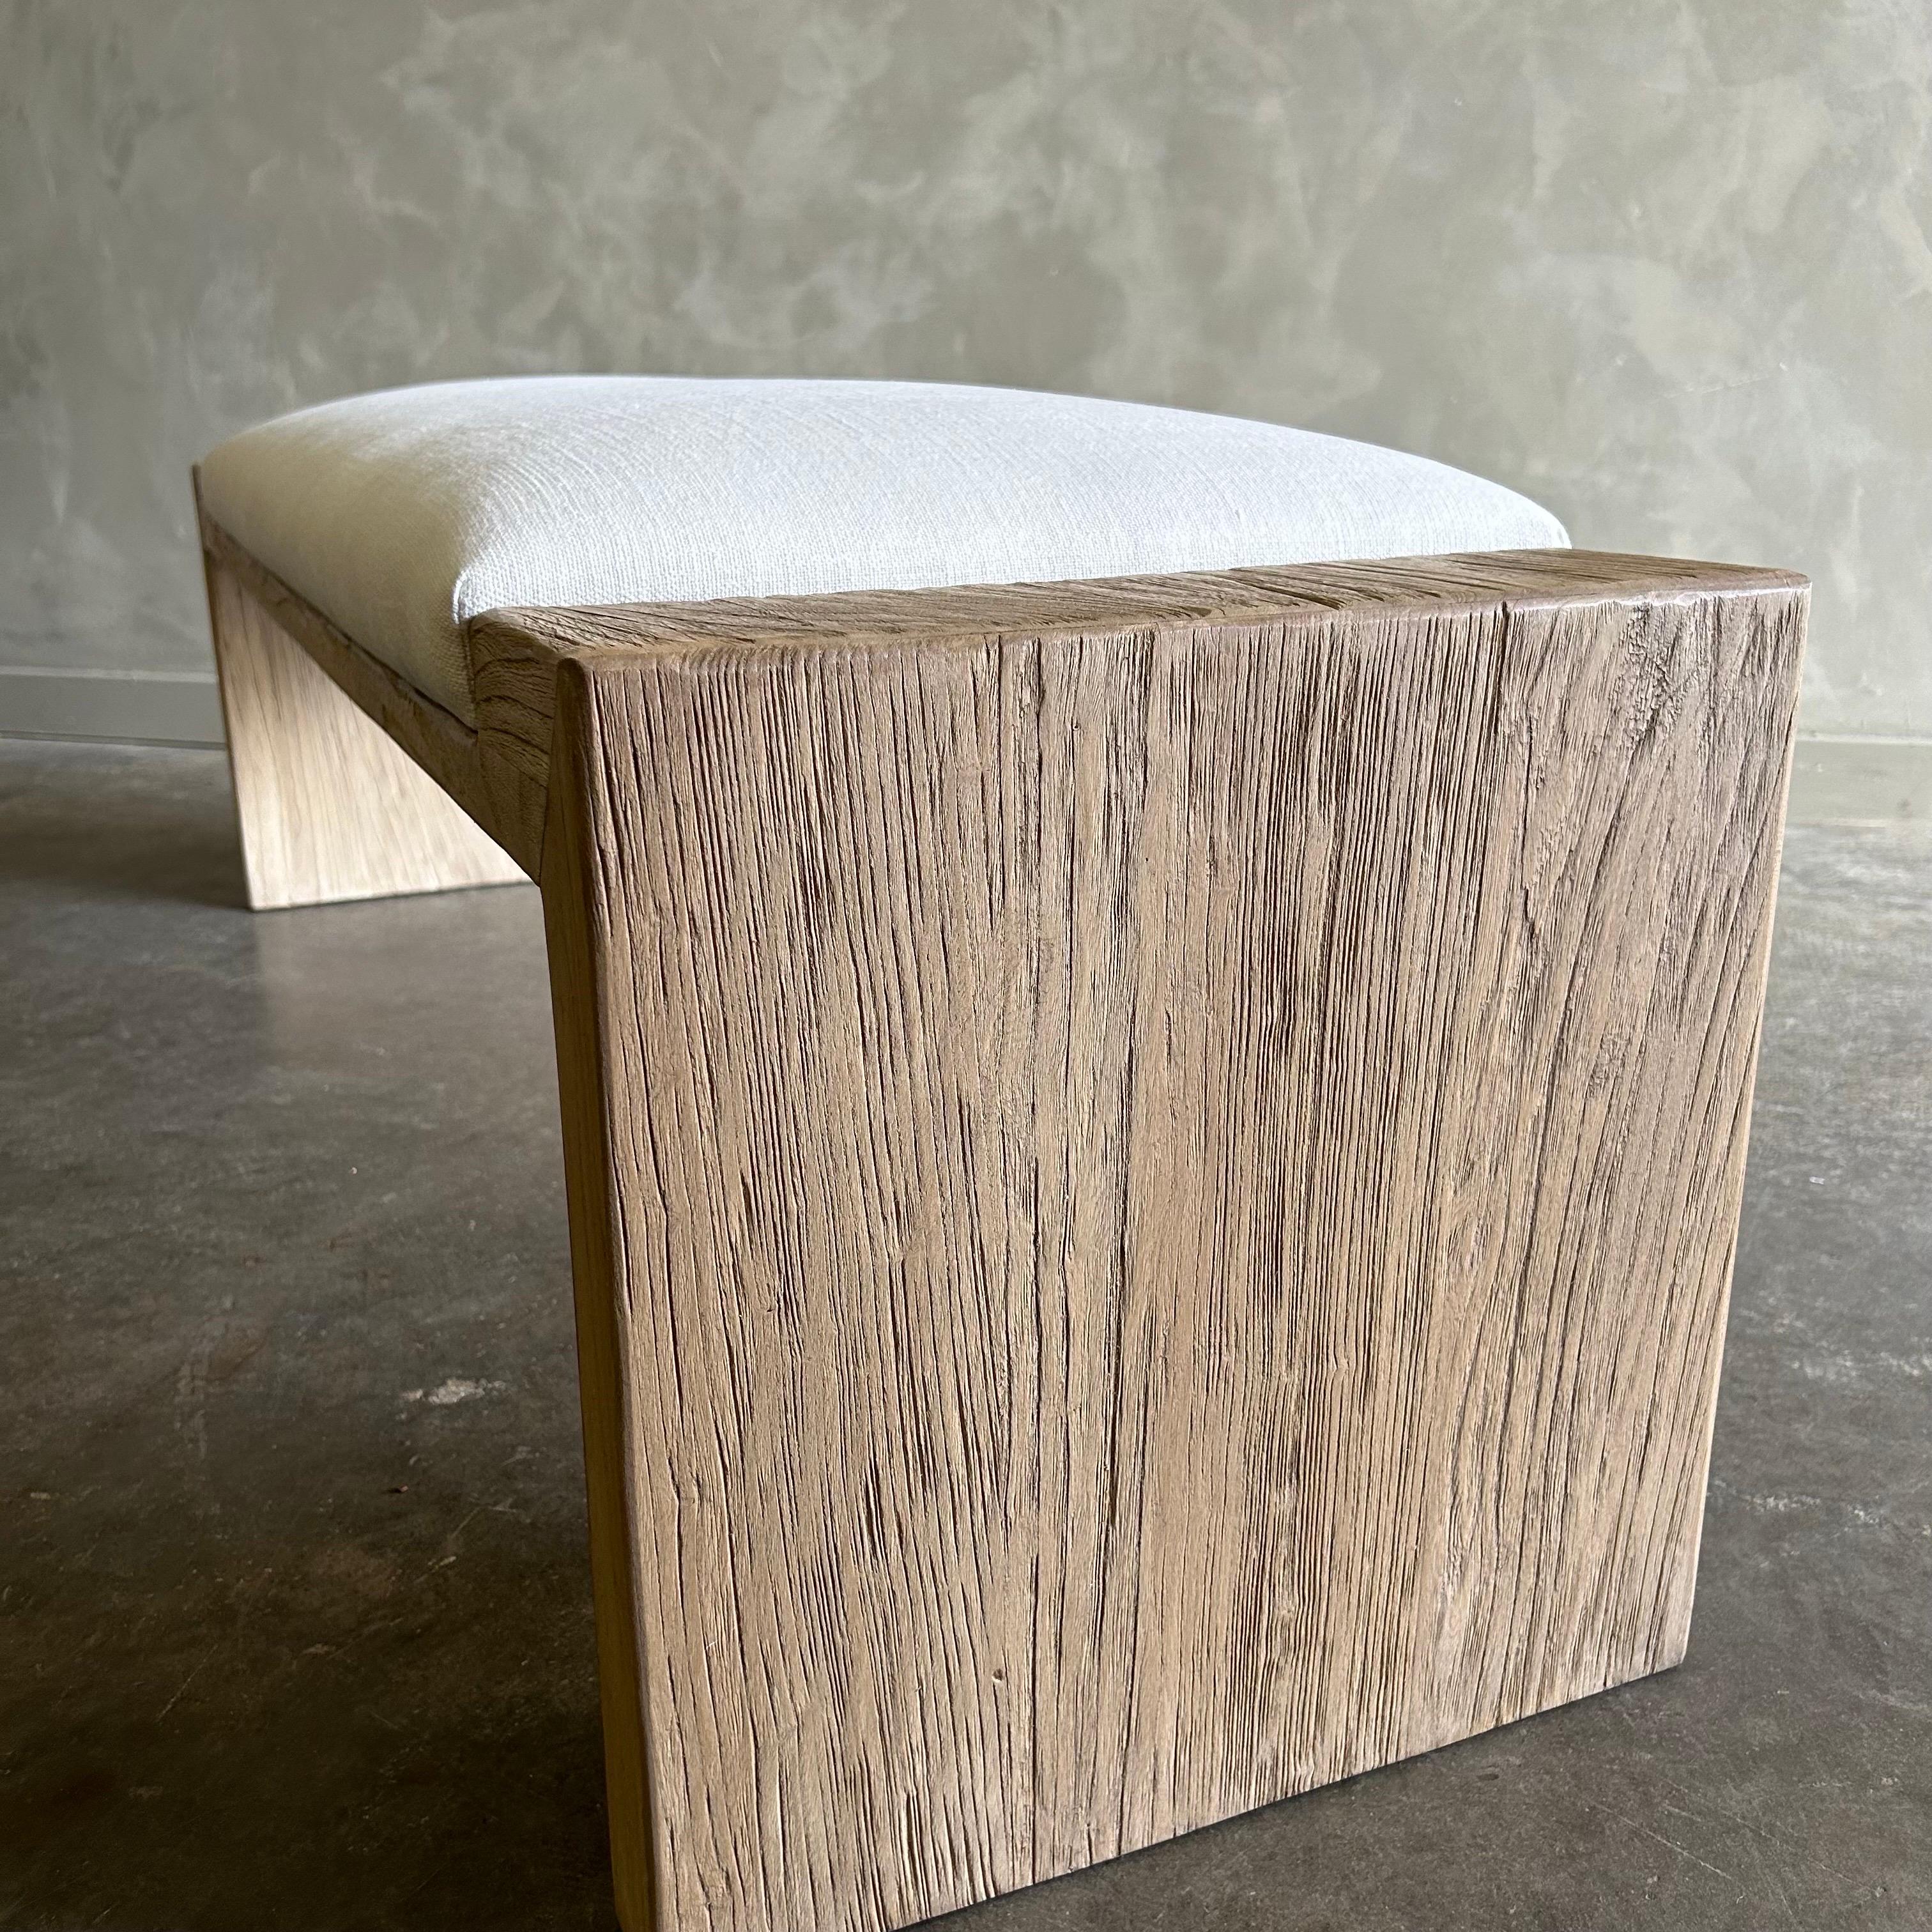 Contemporary Custom Made Elm Wood Bench with COM HIDE